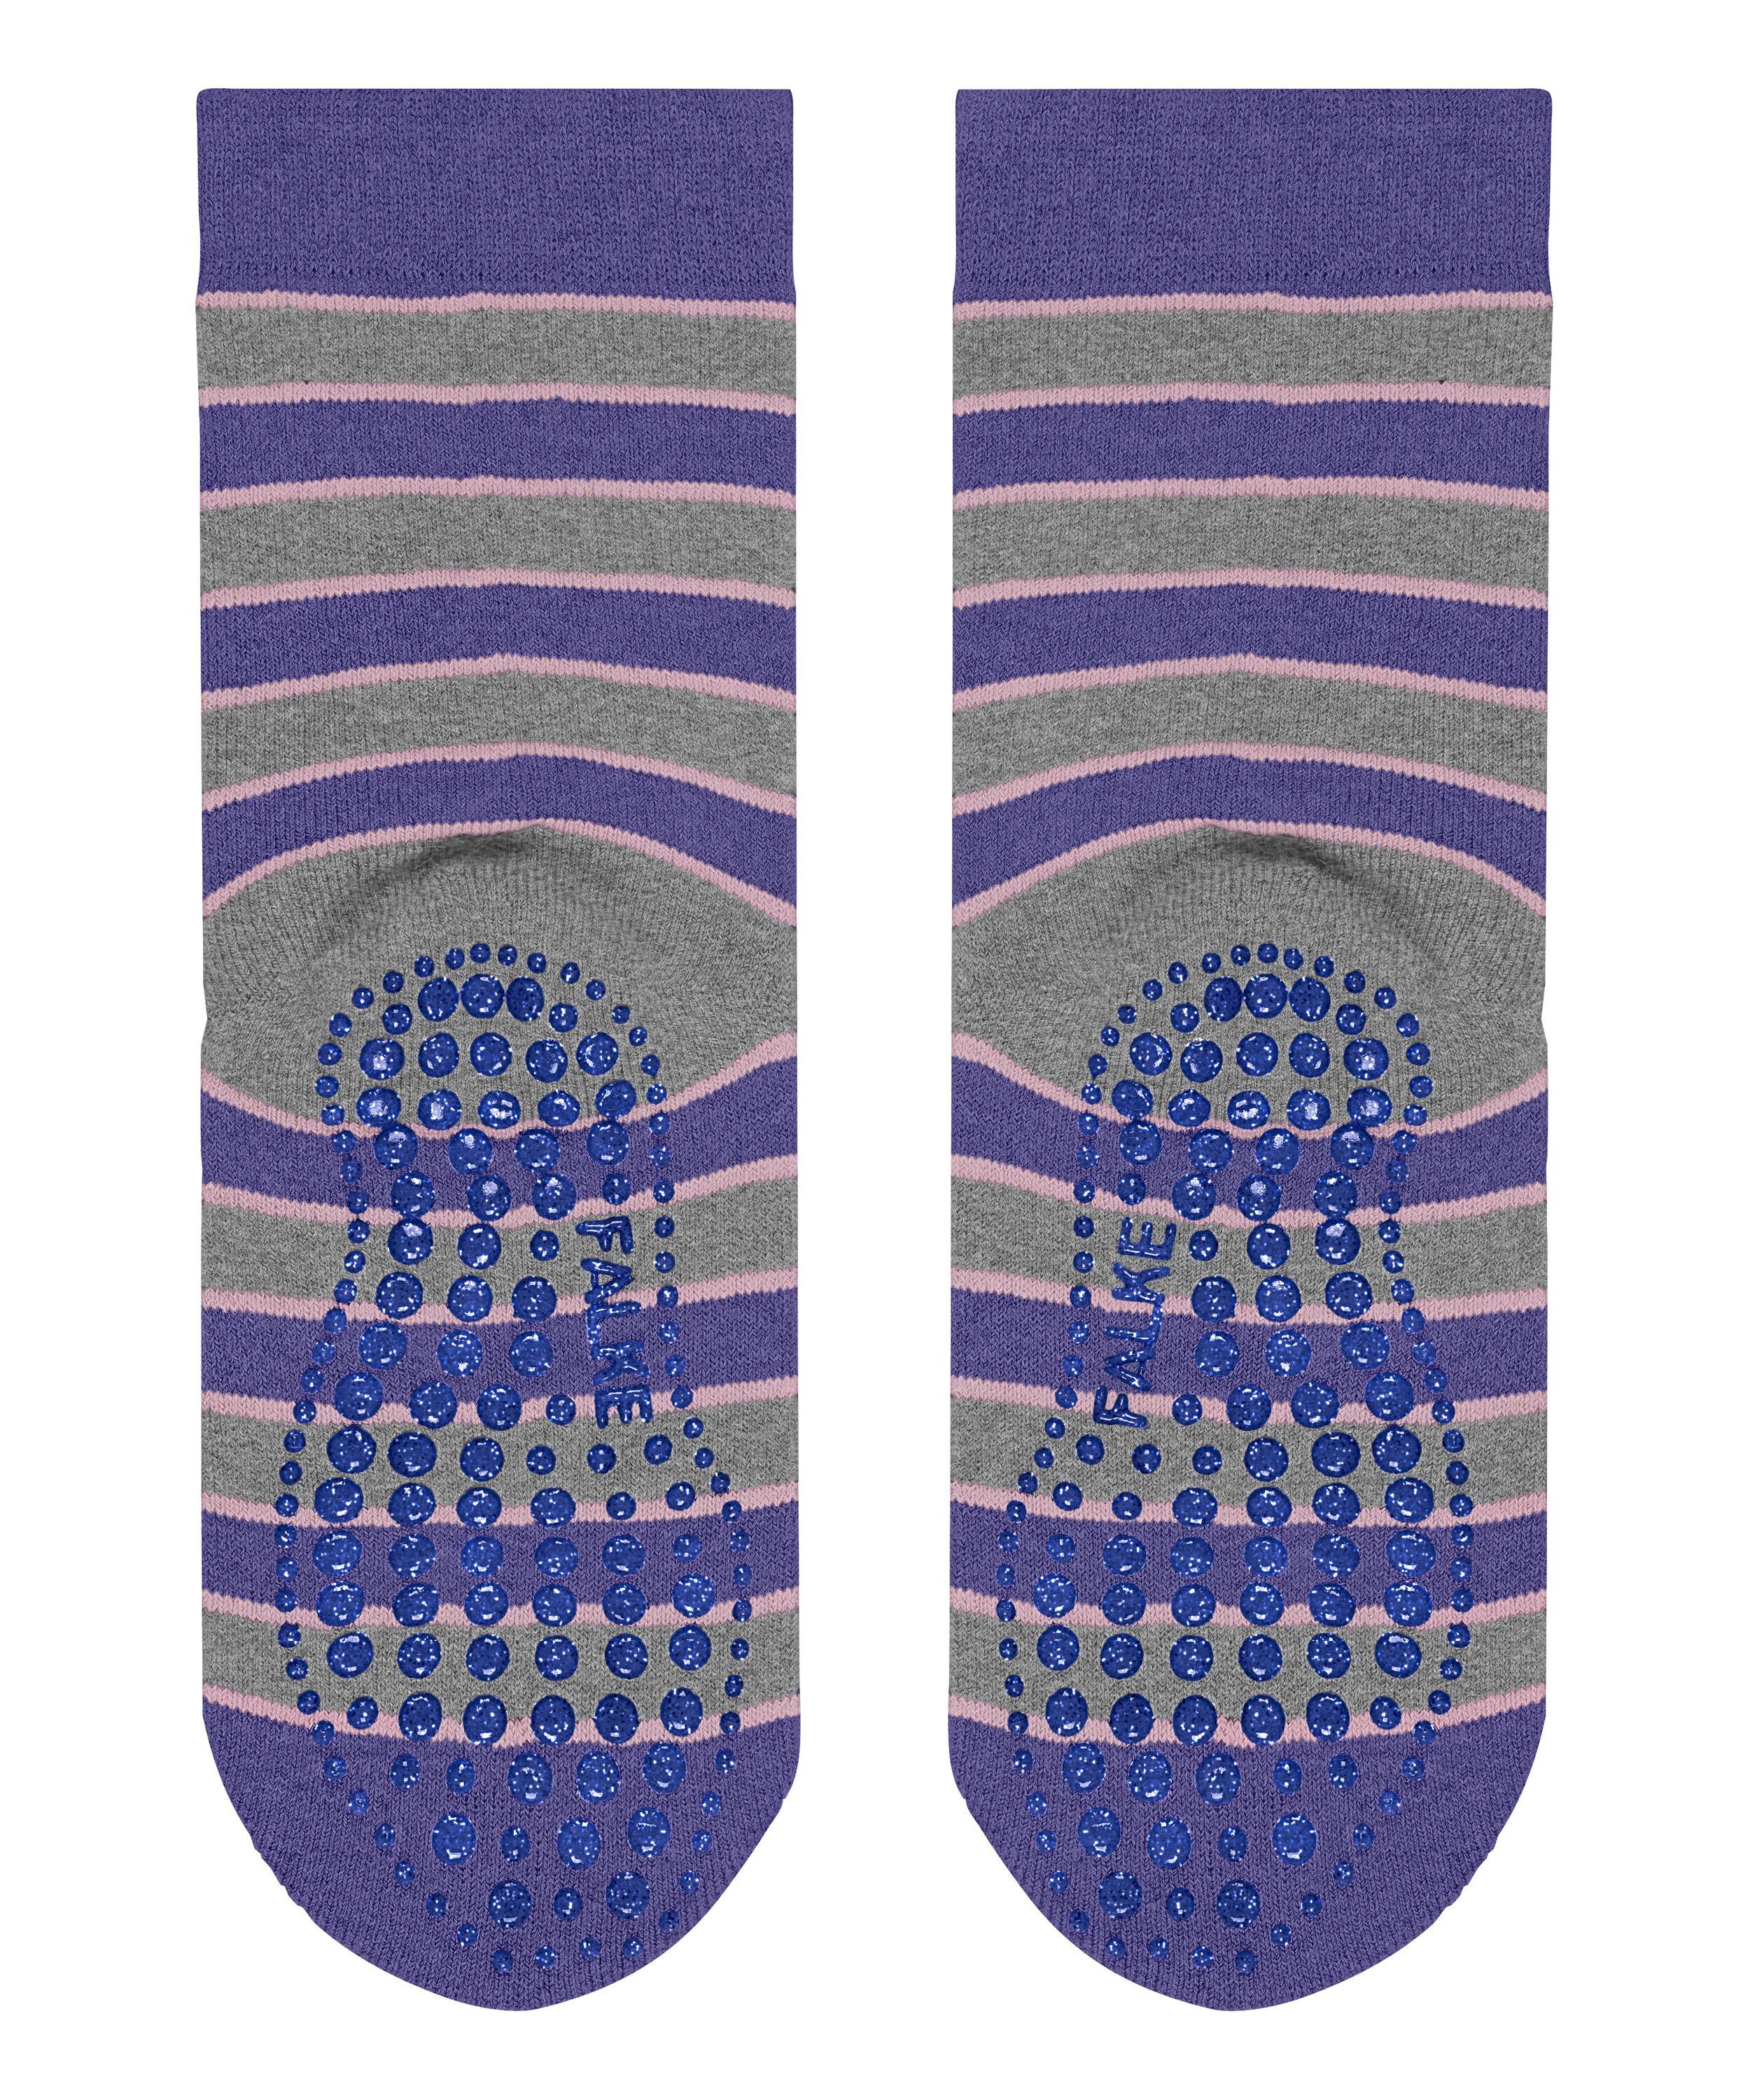 FALKE hyacinth Simple Socken (6970) Stripes (1-Paar)